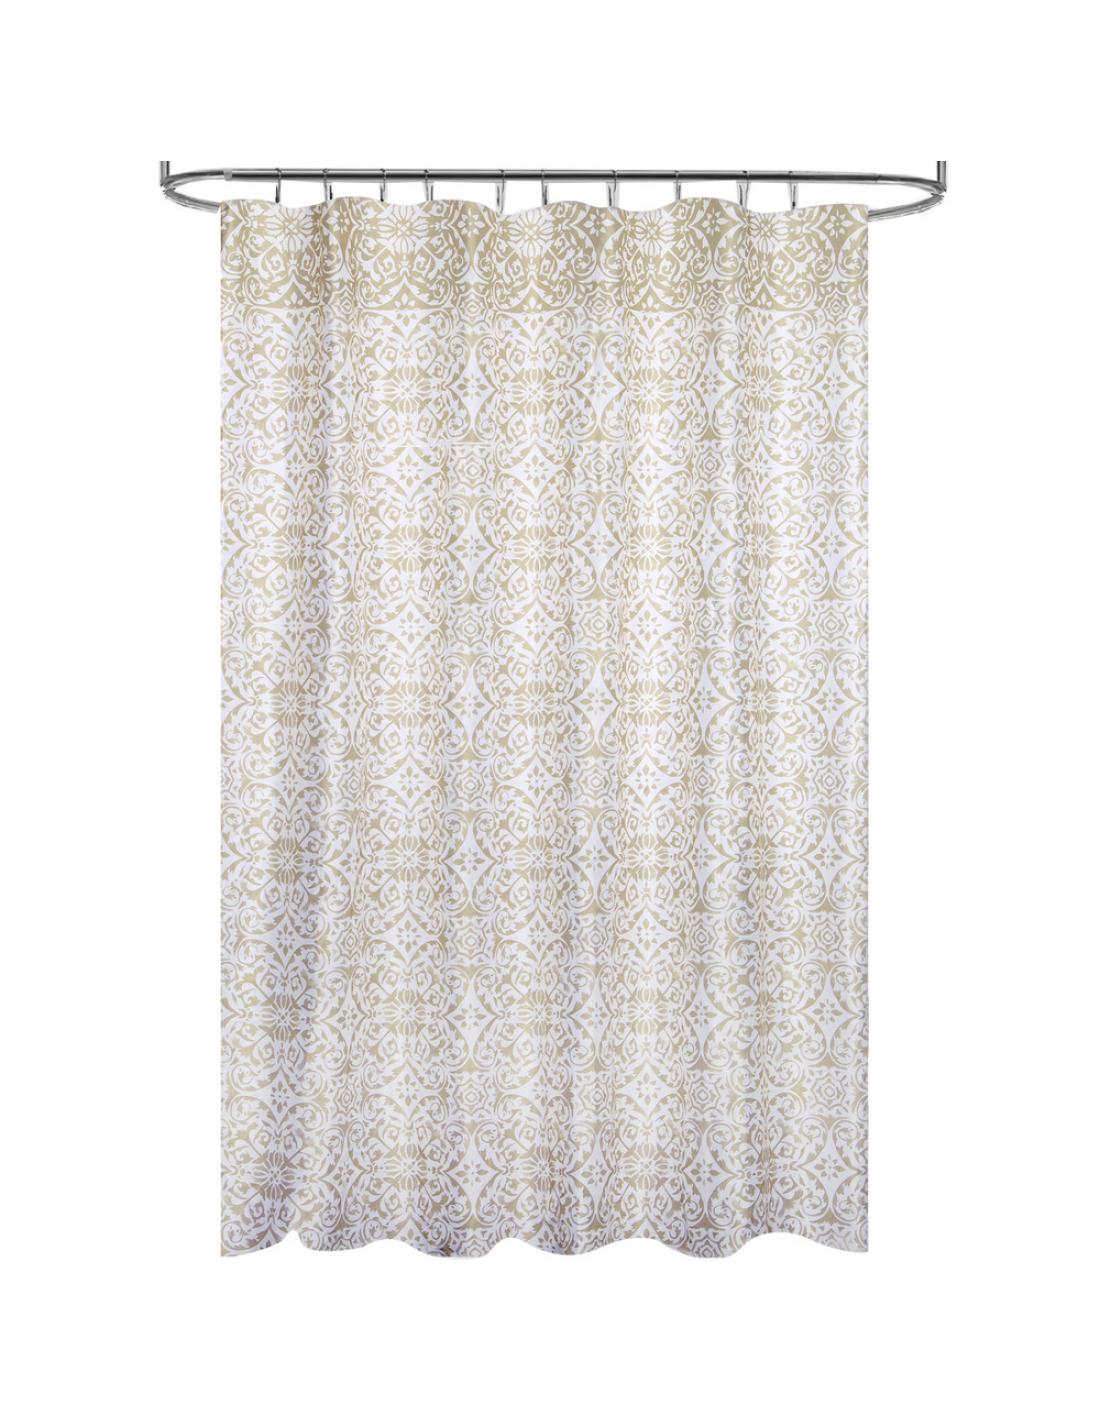 Anillas para cortinas de ducha